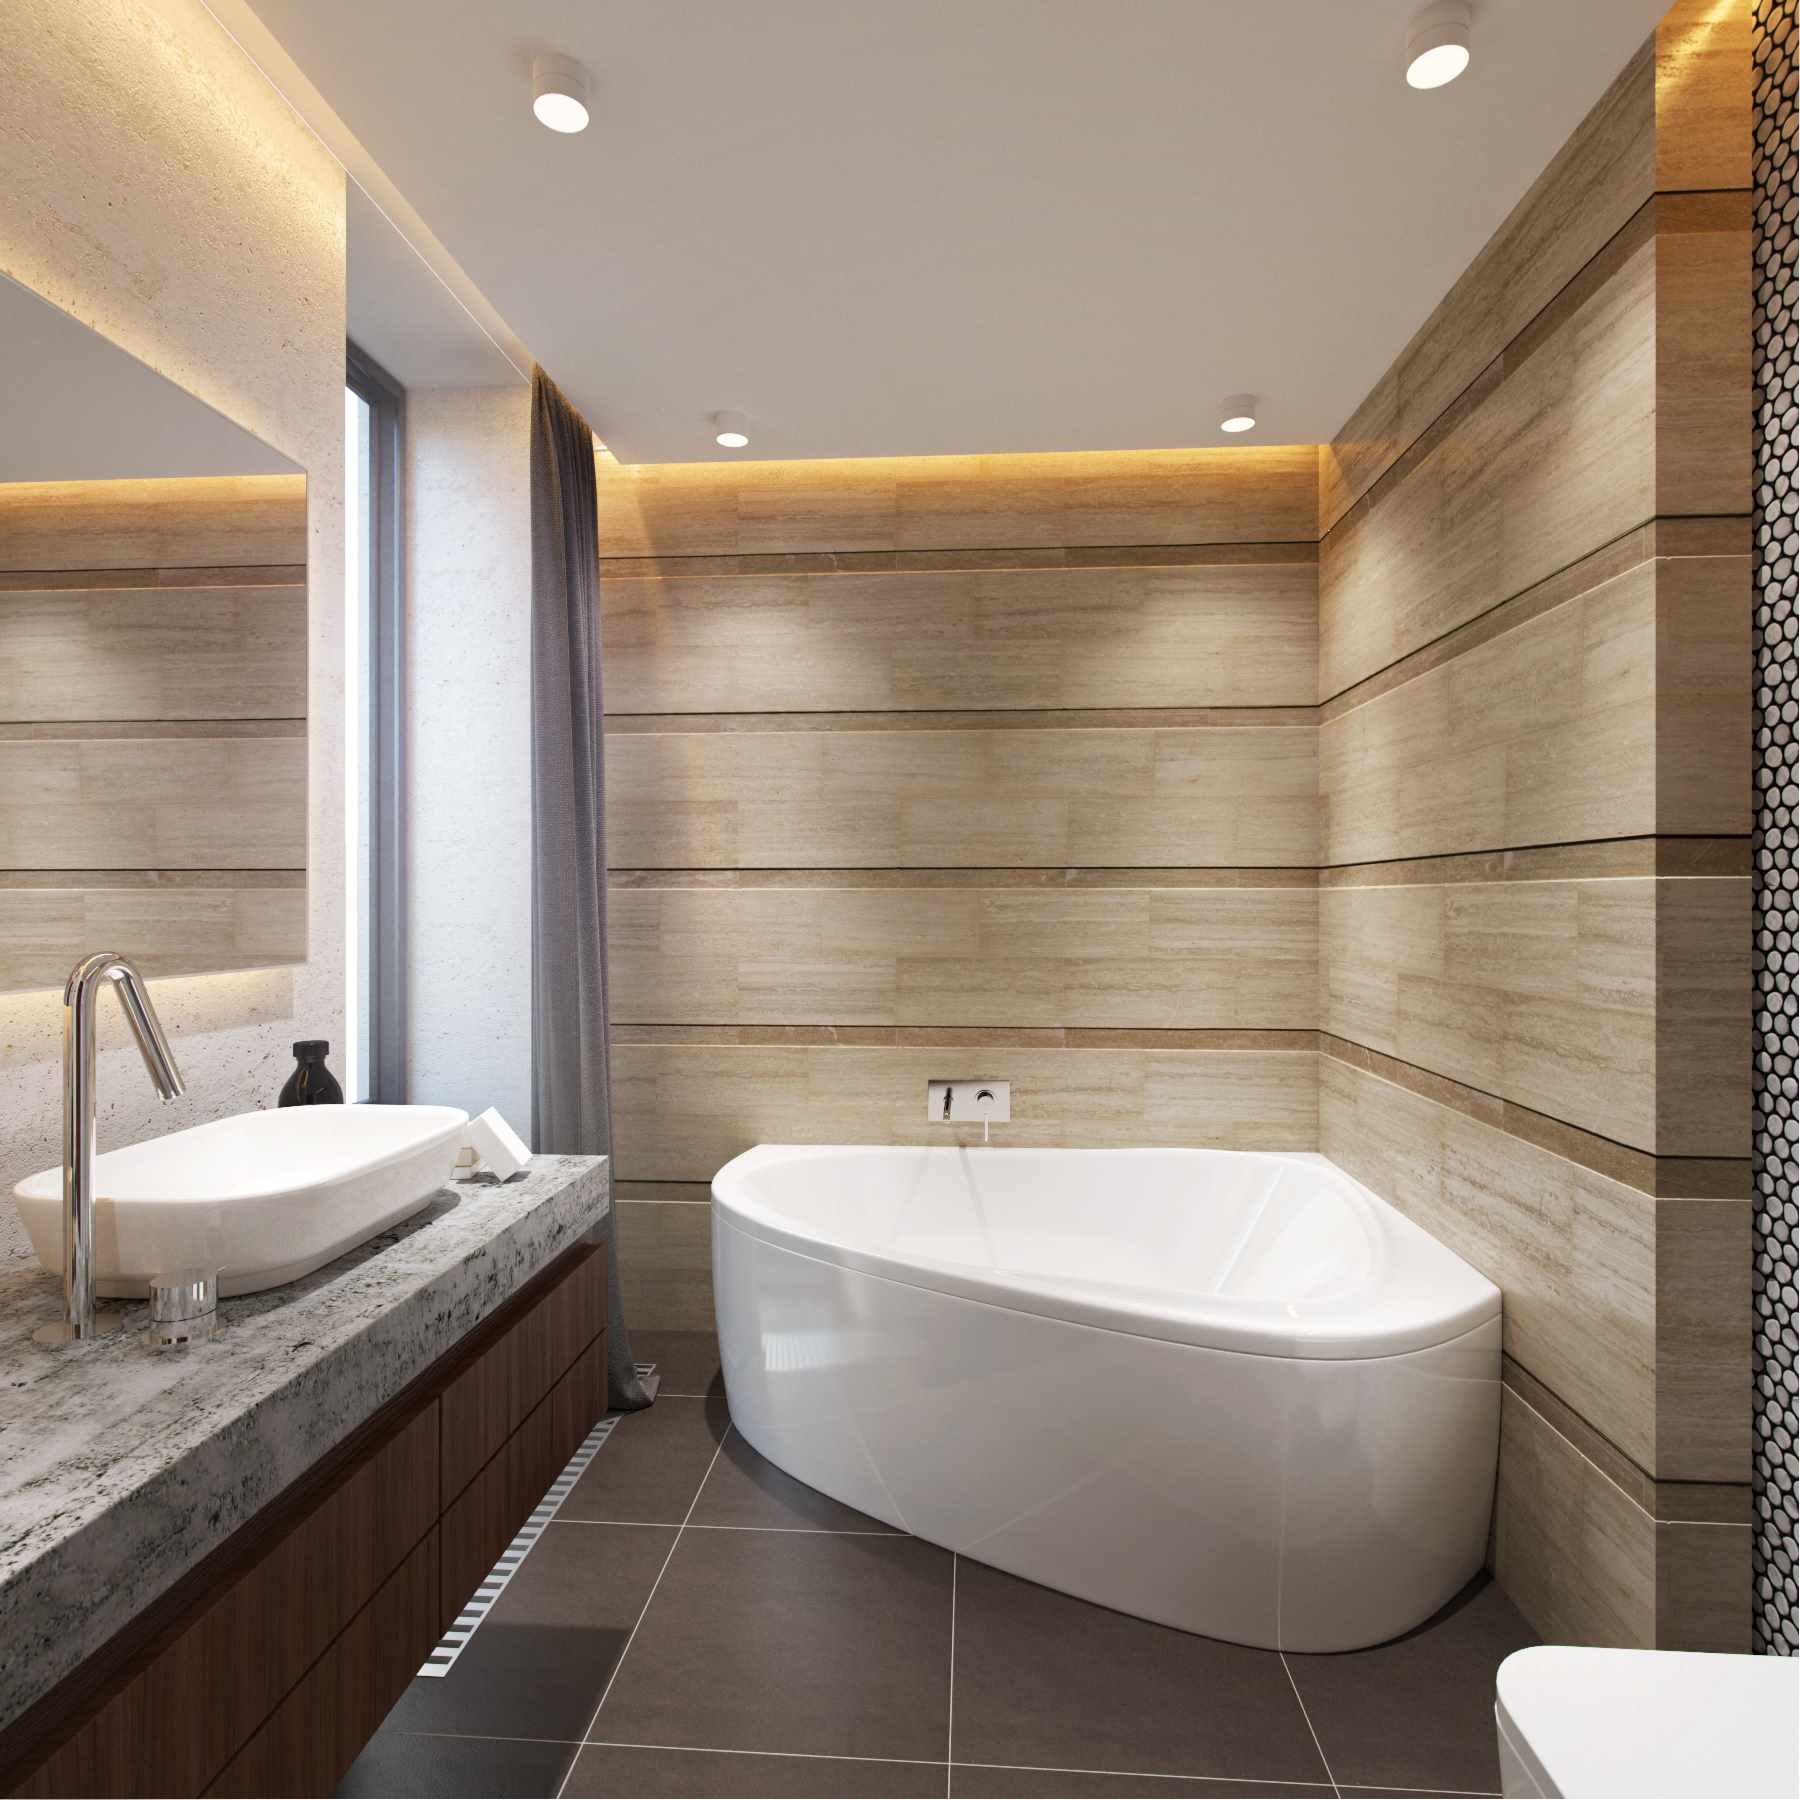 مثال على تصميم الحمام الخفيف مع حمام الزاوية